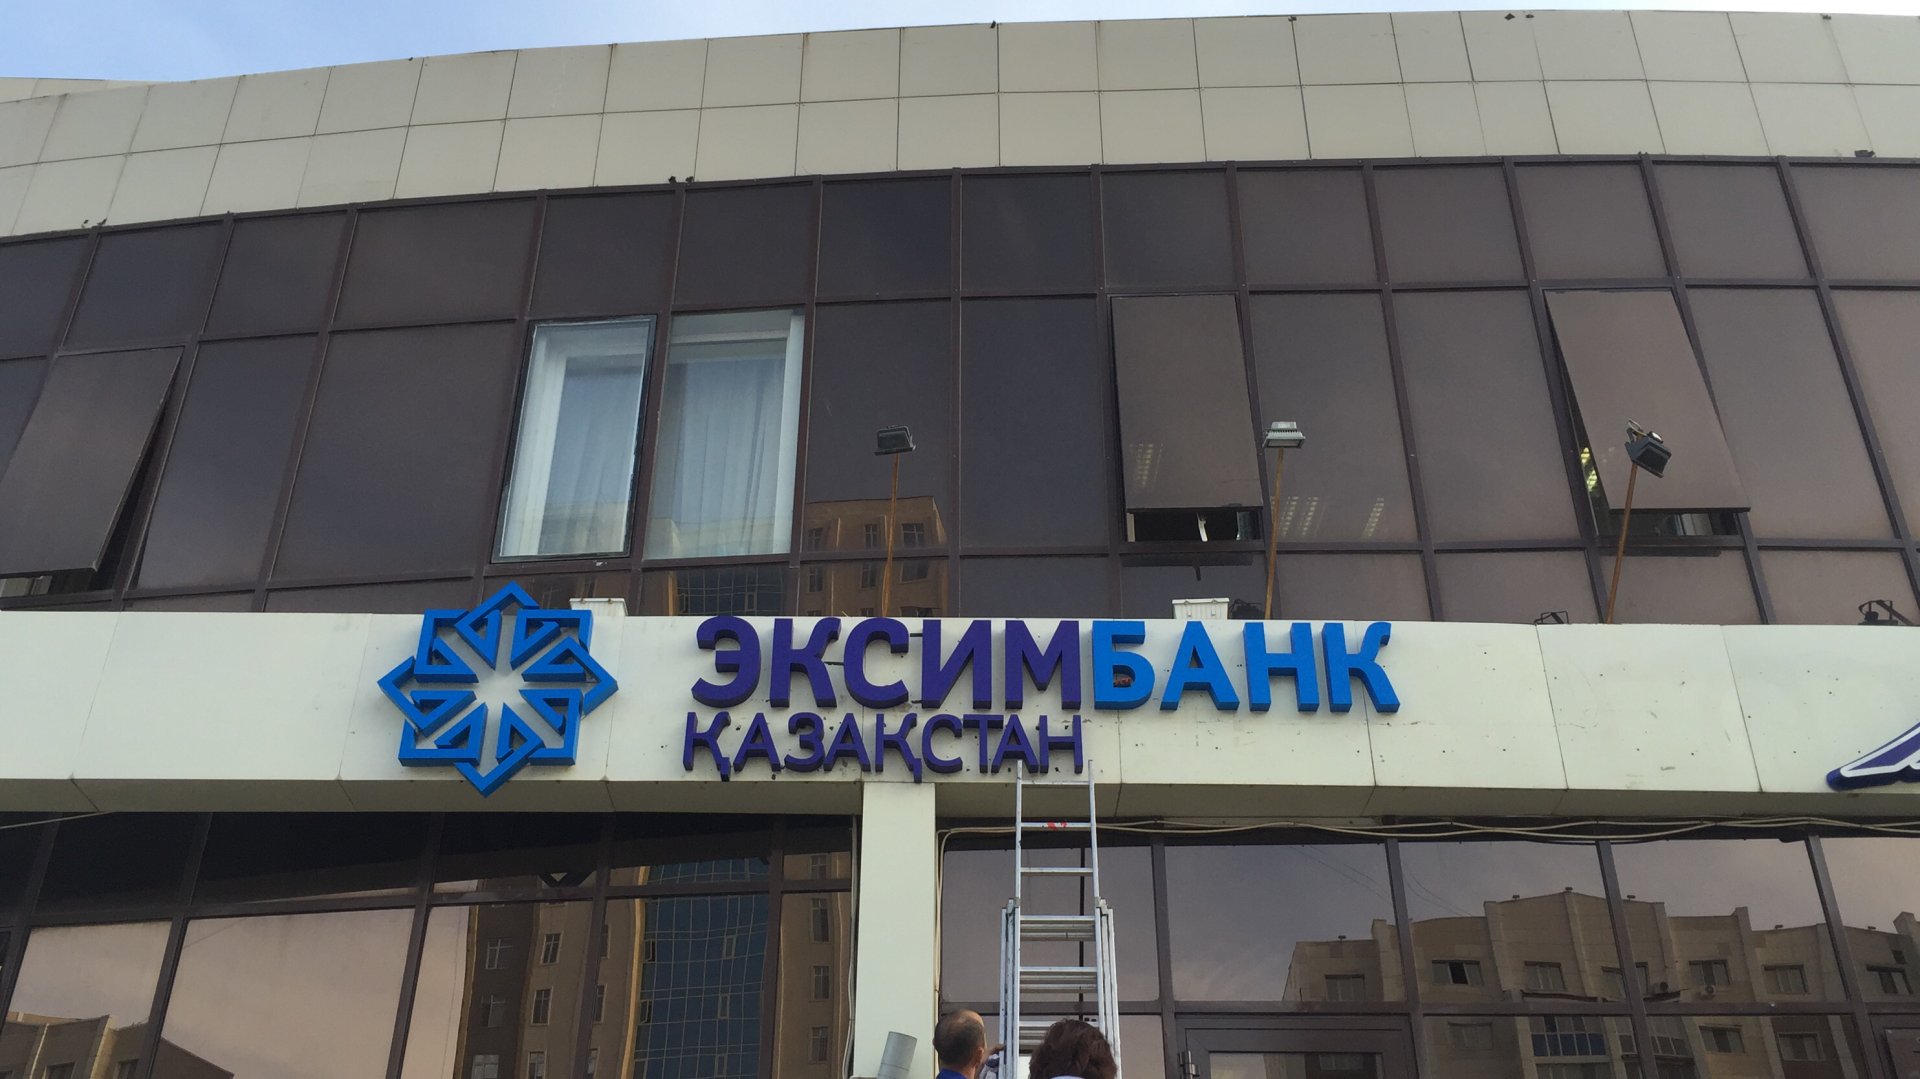 Вступило в законную силу решение суда о принудительной ликвидации Эксимбанка Казахстана    